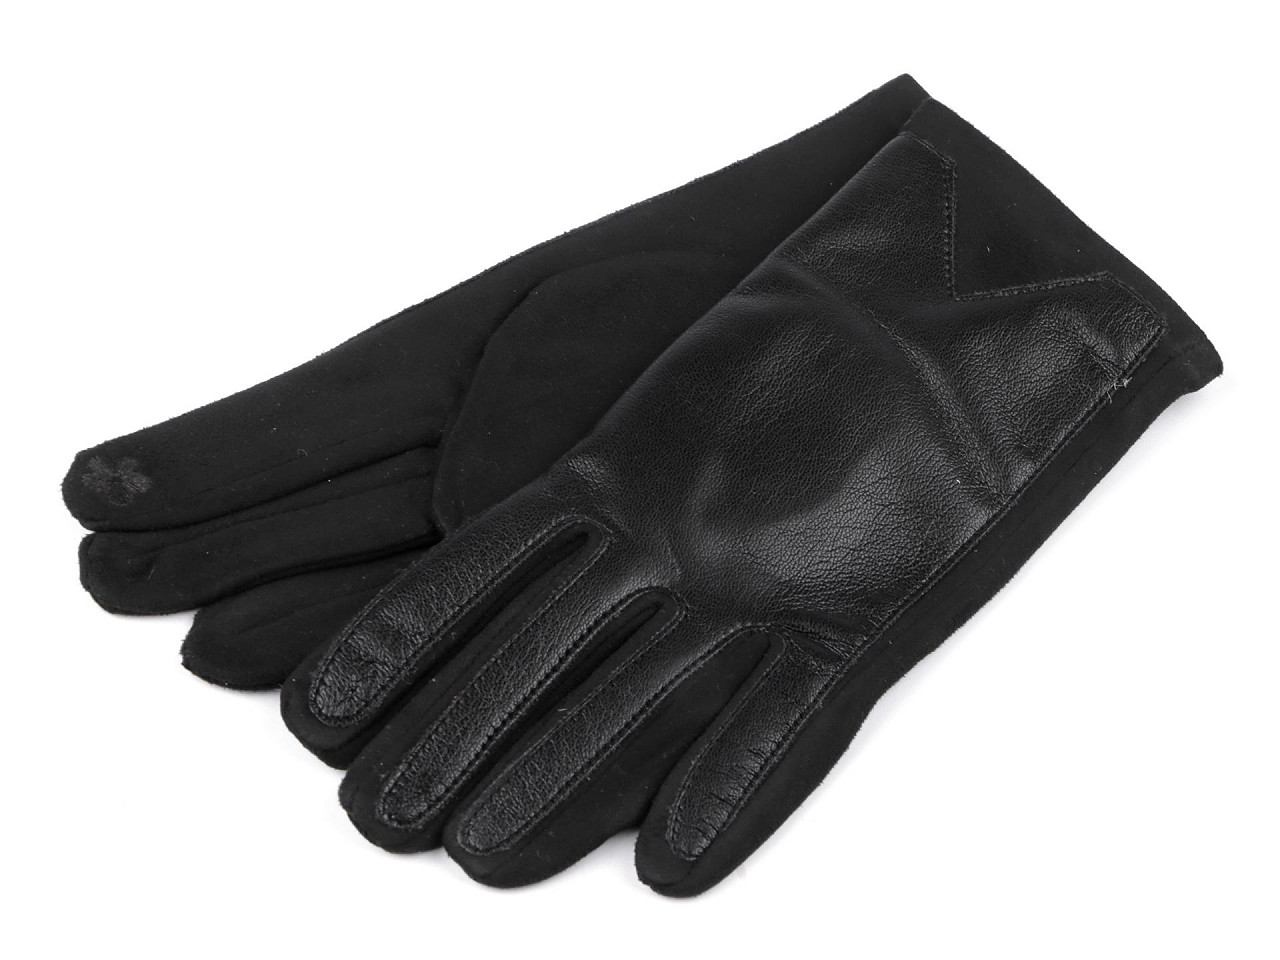 Mănuși pentru femei din piele ecologică, cu funcție tactilă, negre, 1 pereche